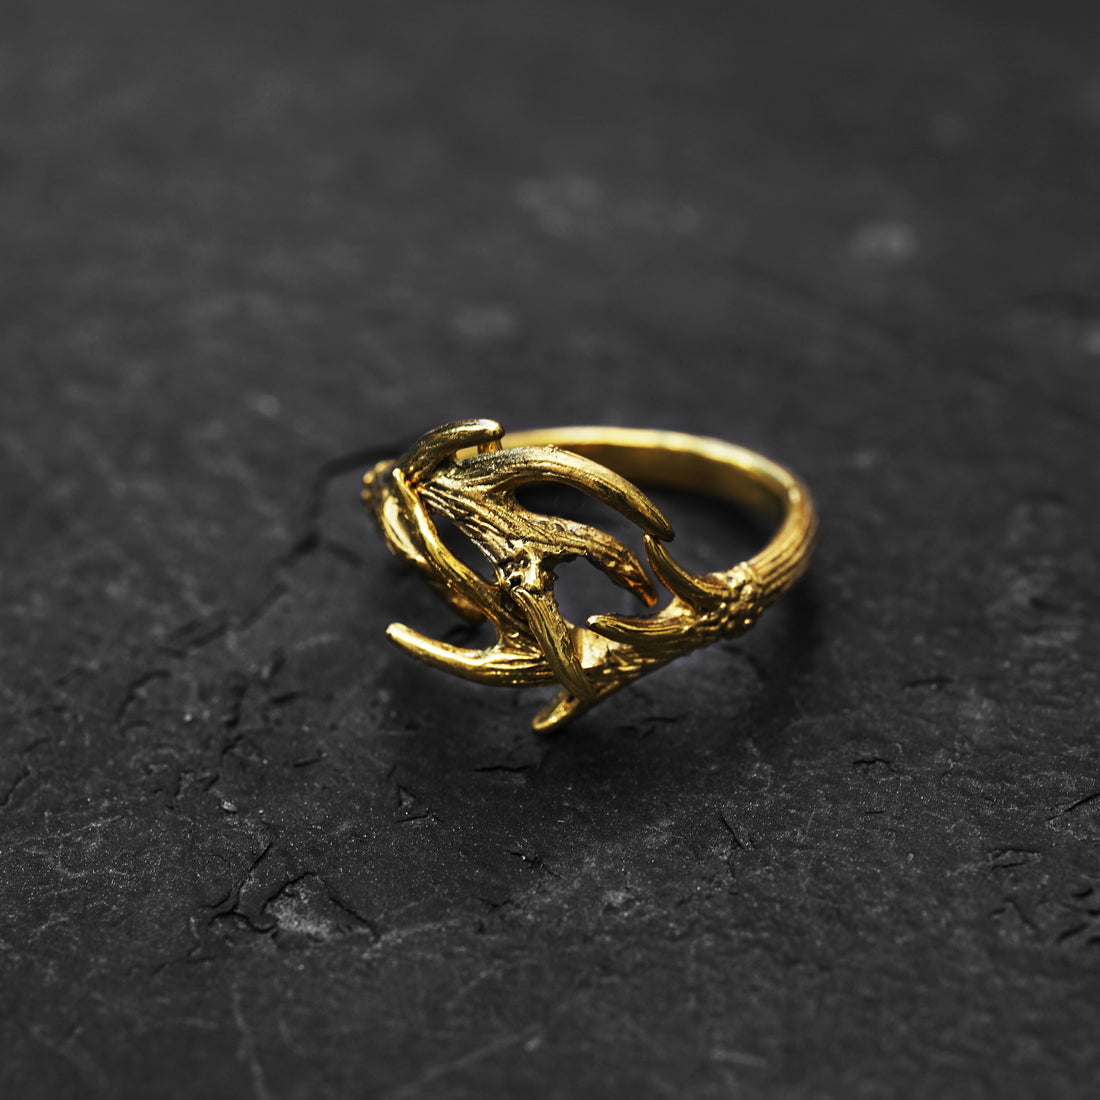 bronze-antler-horn-ring